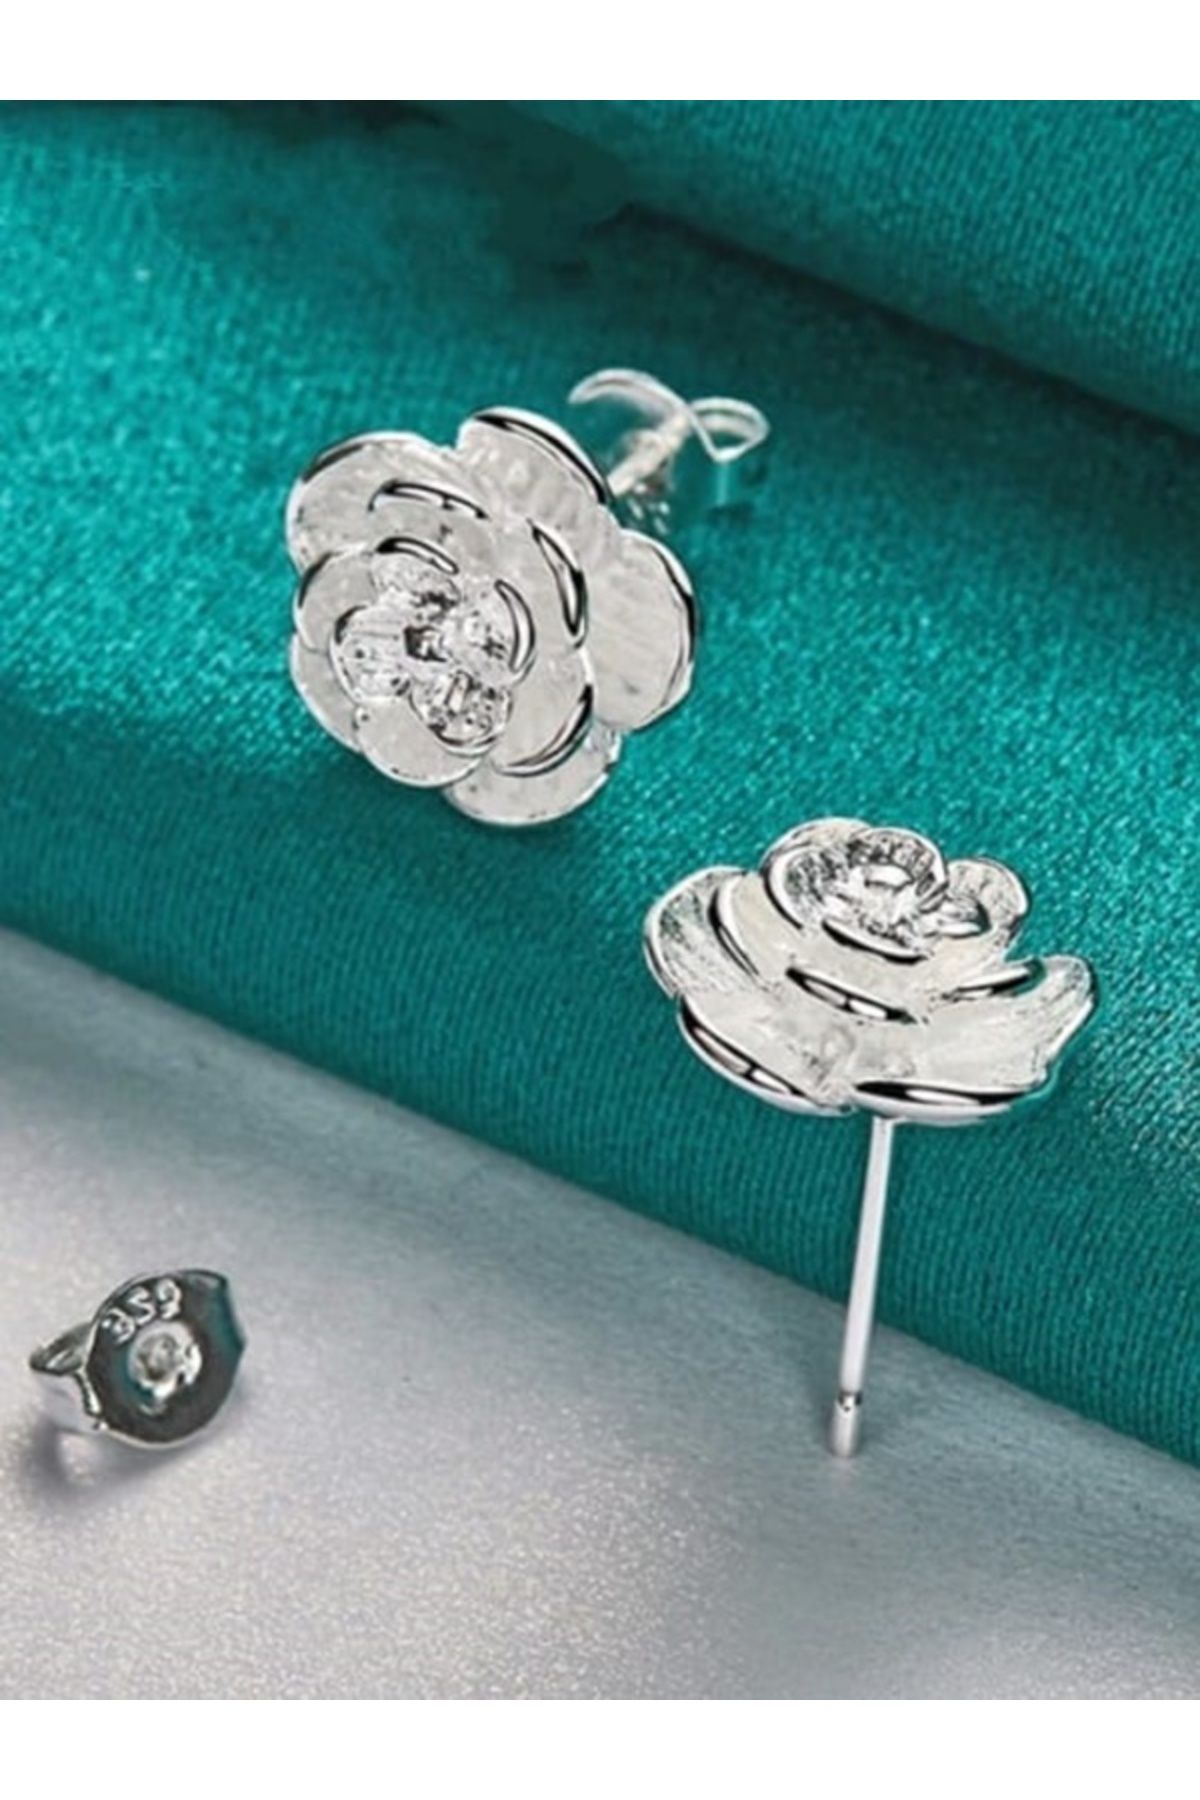 Shisa Jewel S925 gümüş gül çiçek düğme küpe(1 cm.) kadın moda düğün nişan takı.(96)